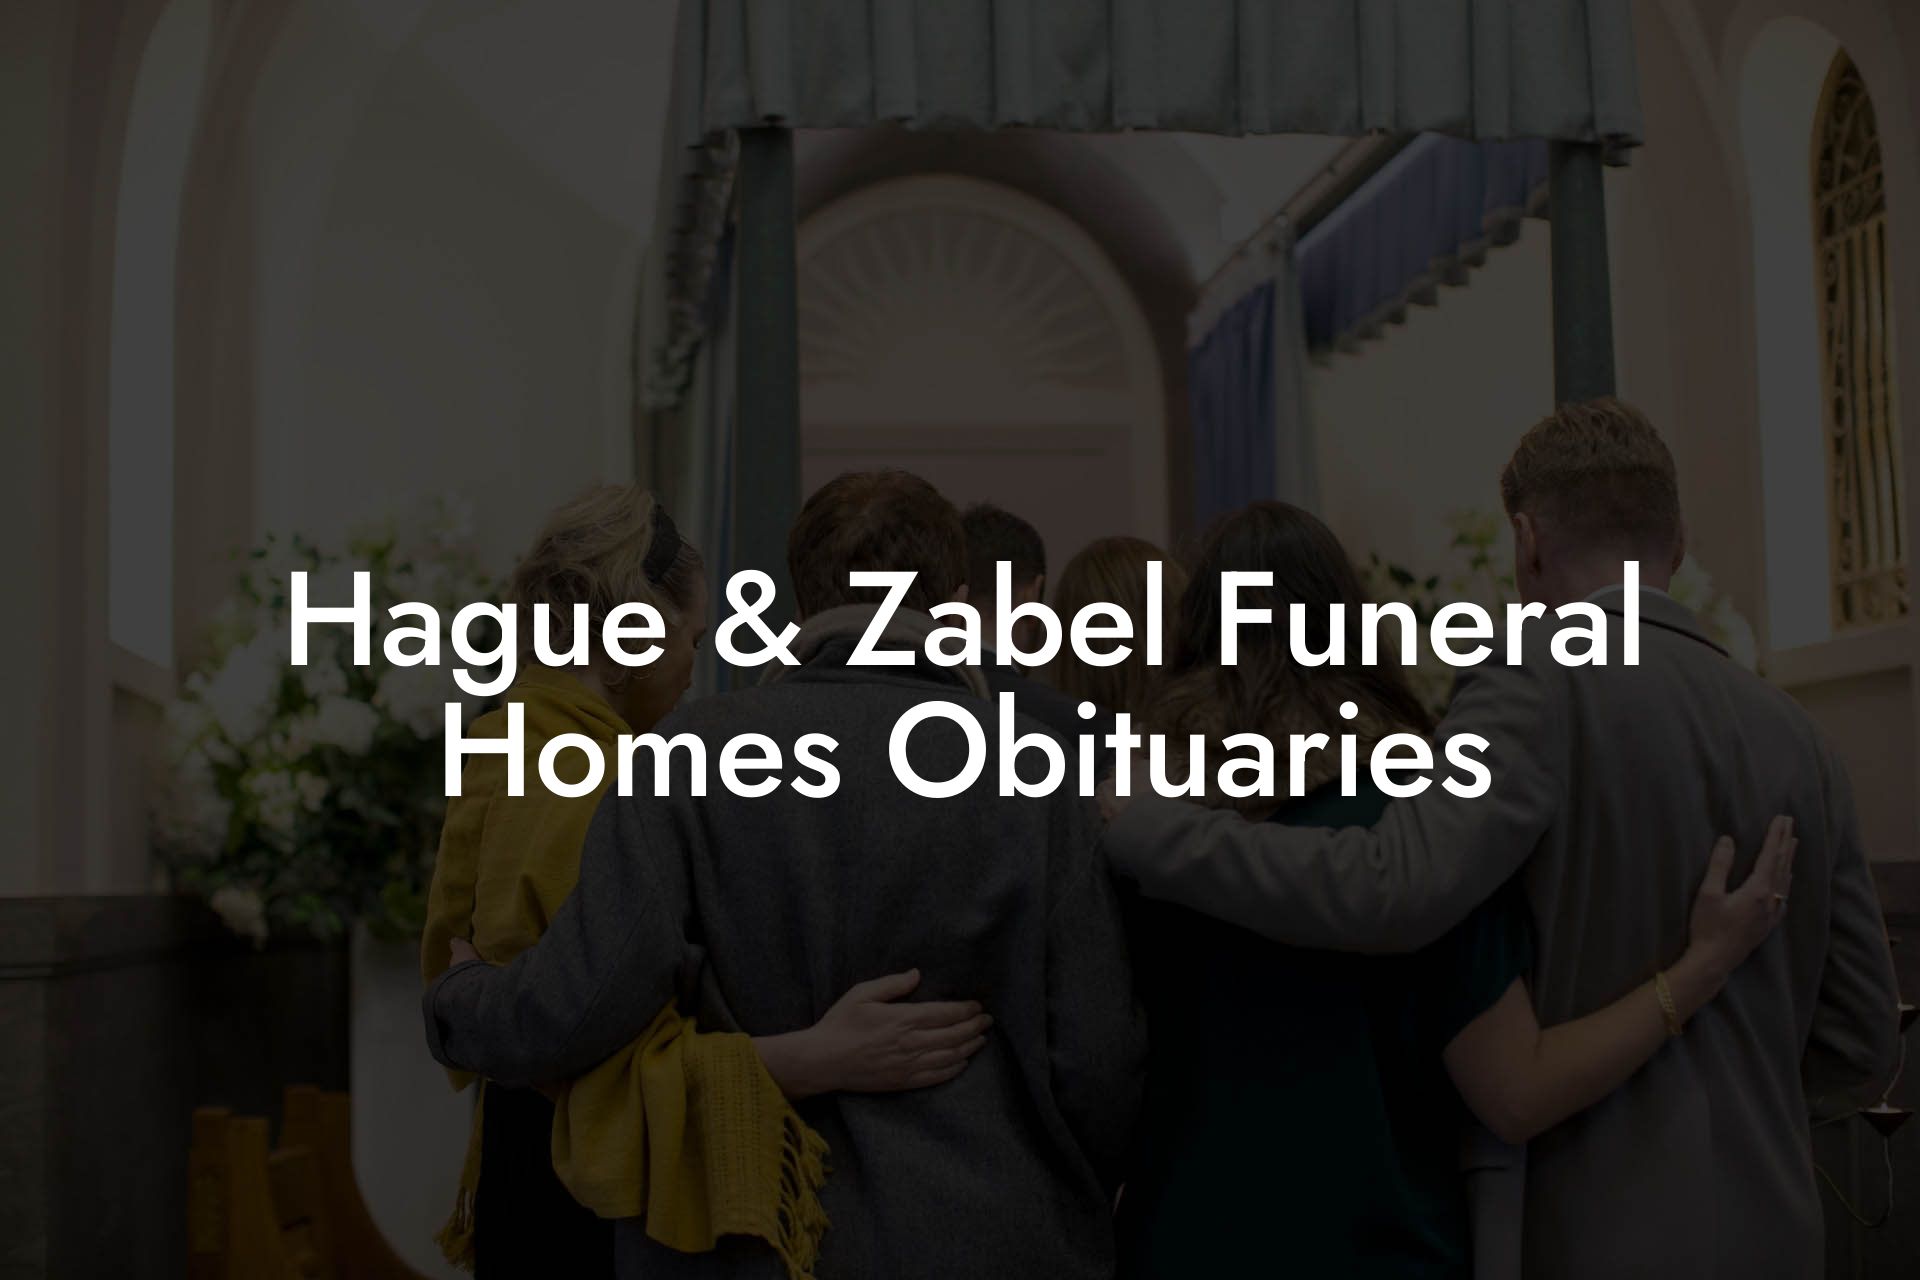 Hague & Zabel Funeral Homes Obituaries